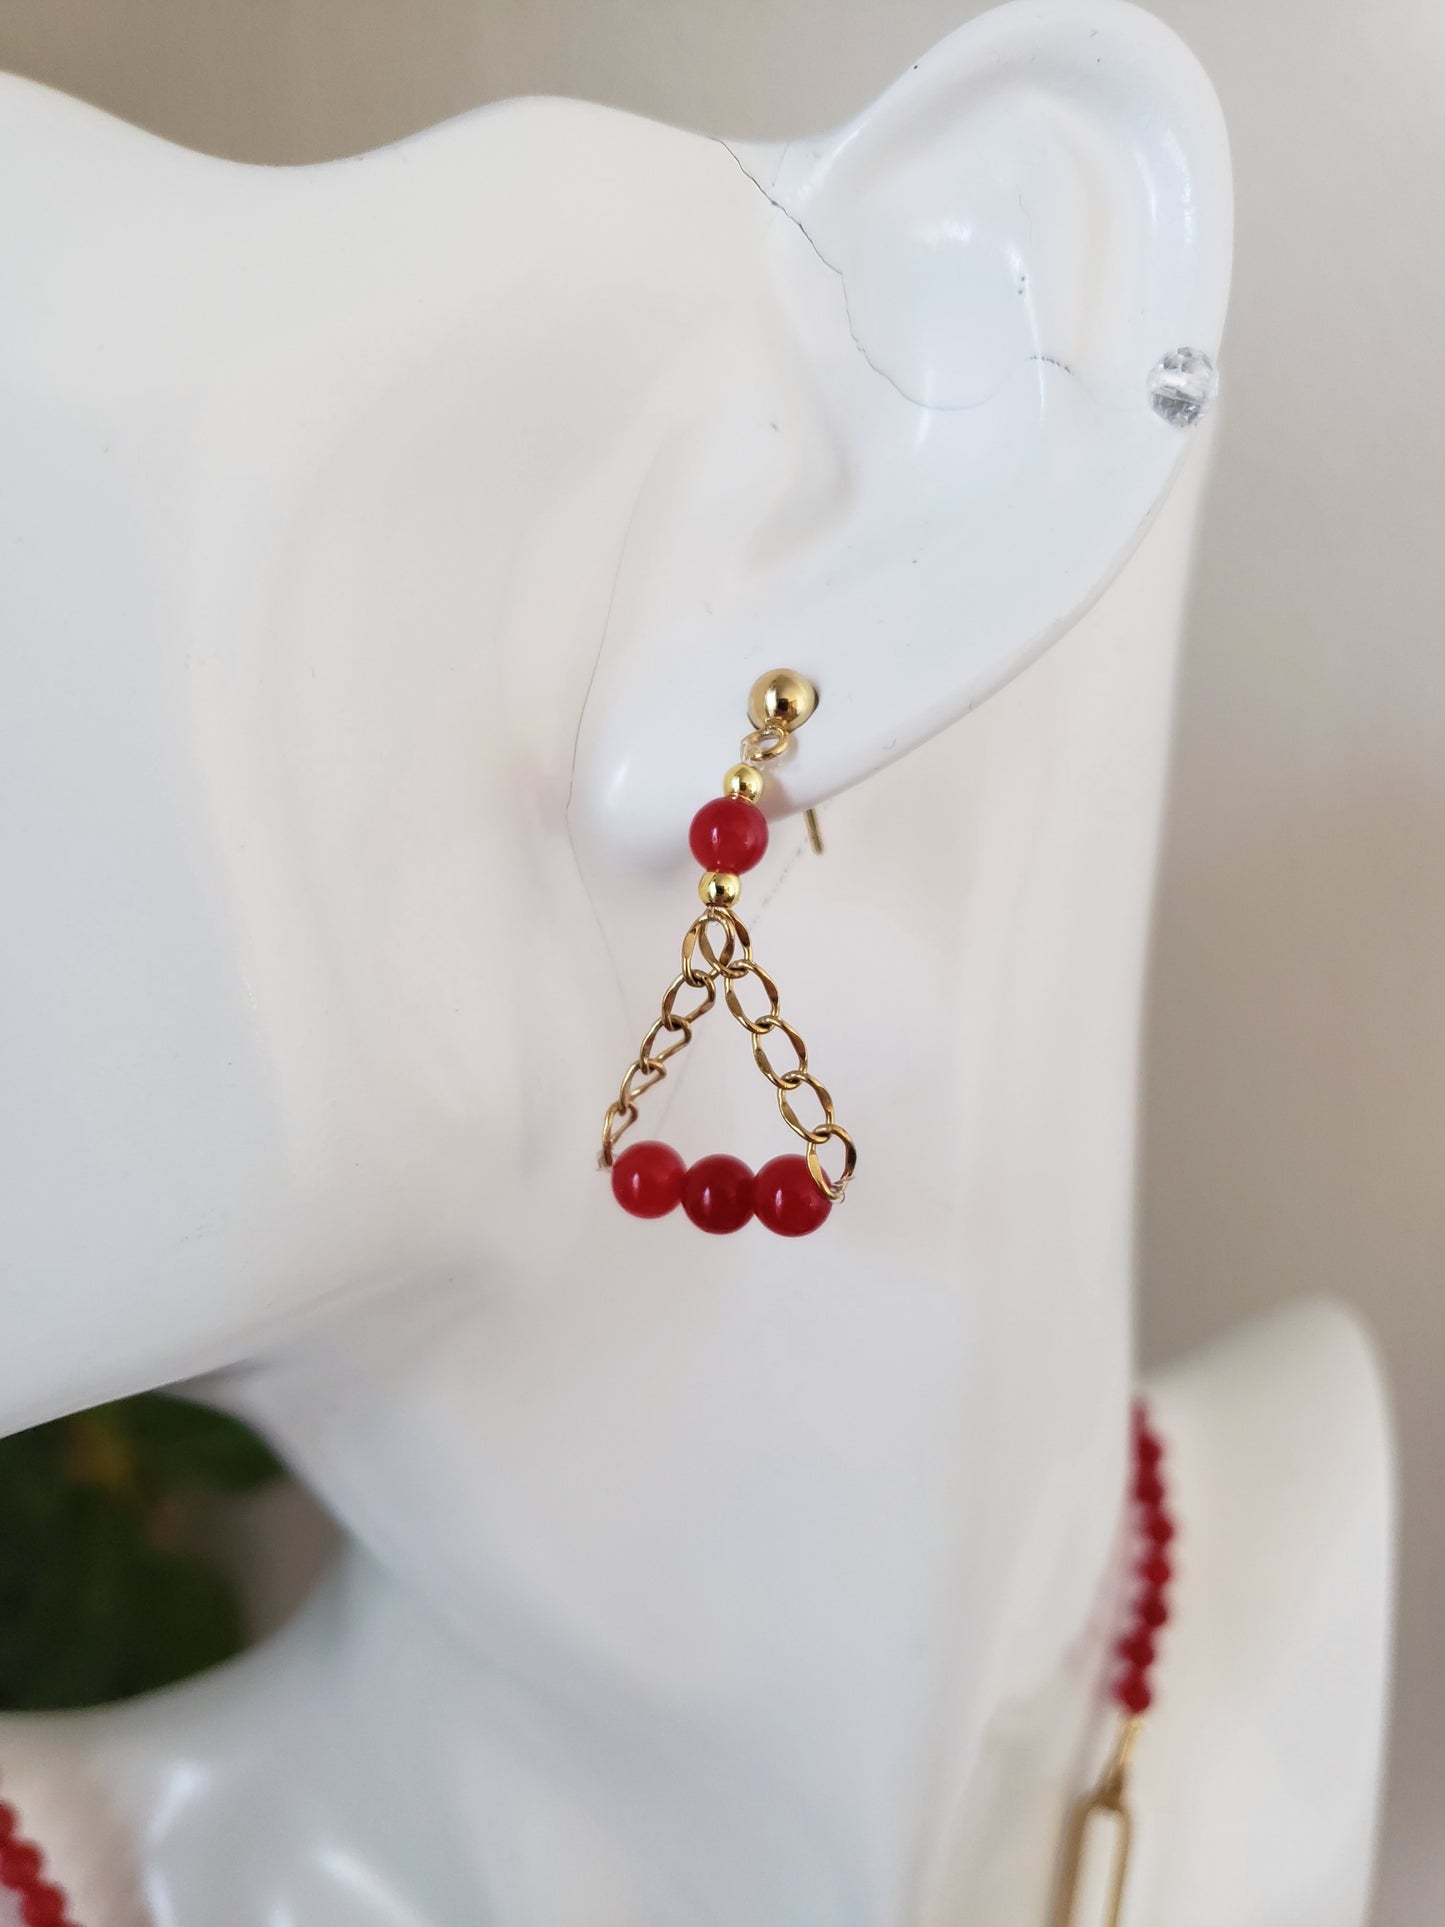 Moderno Collar y Aretes en Acero Quirúrgico Color oro con Delicadas Piedras en Cuarzo Rojo